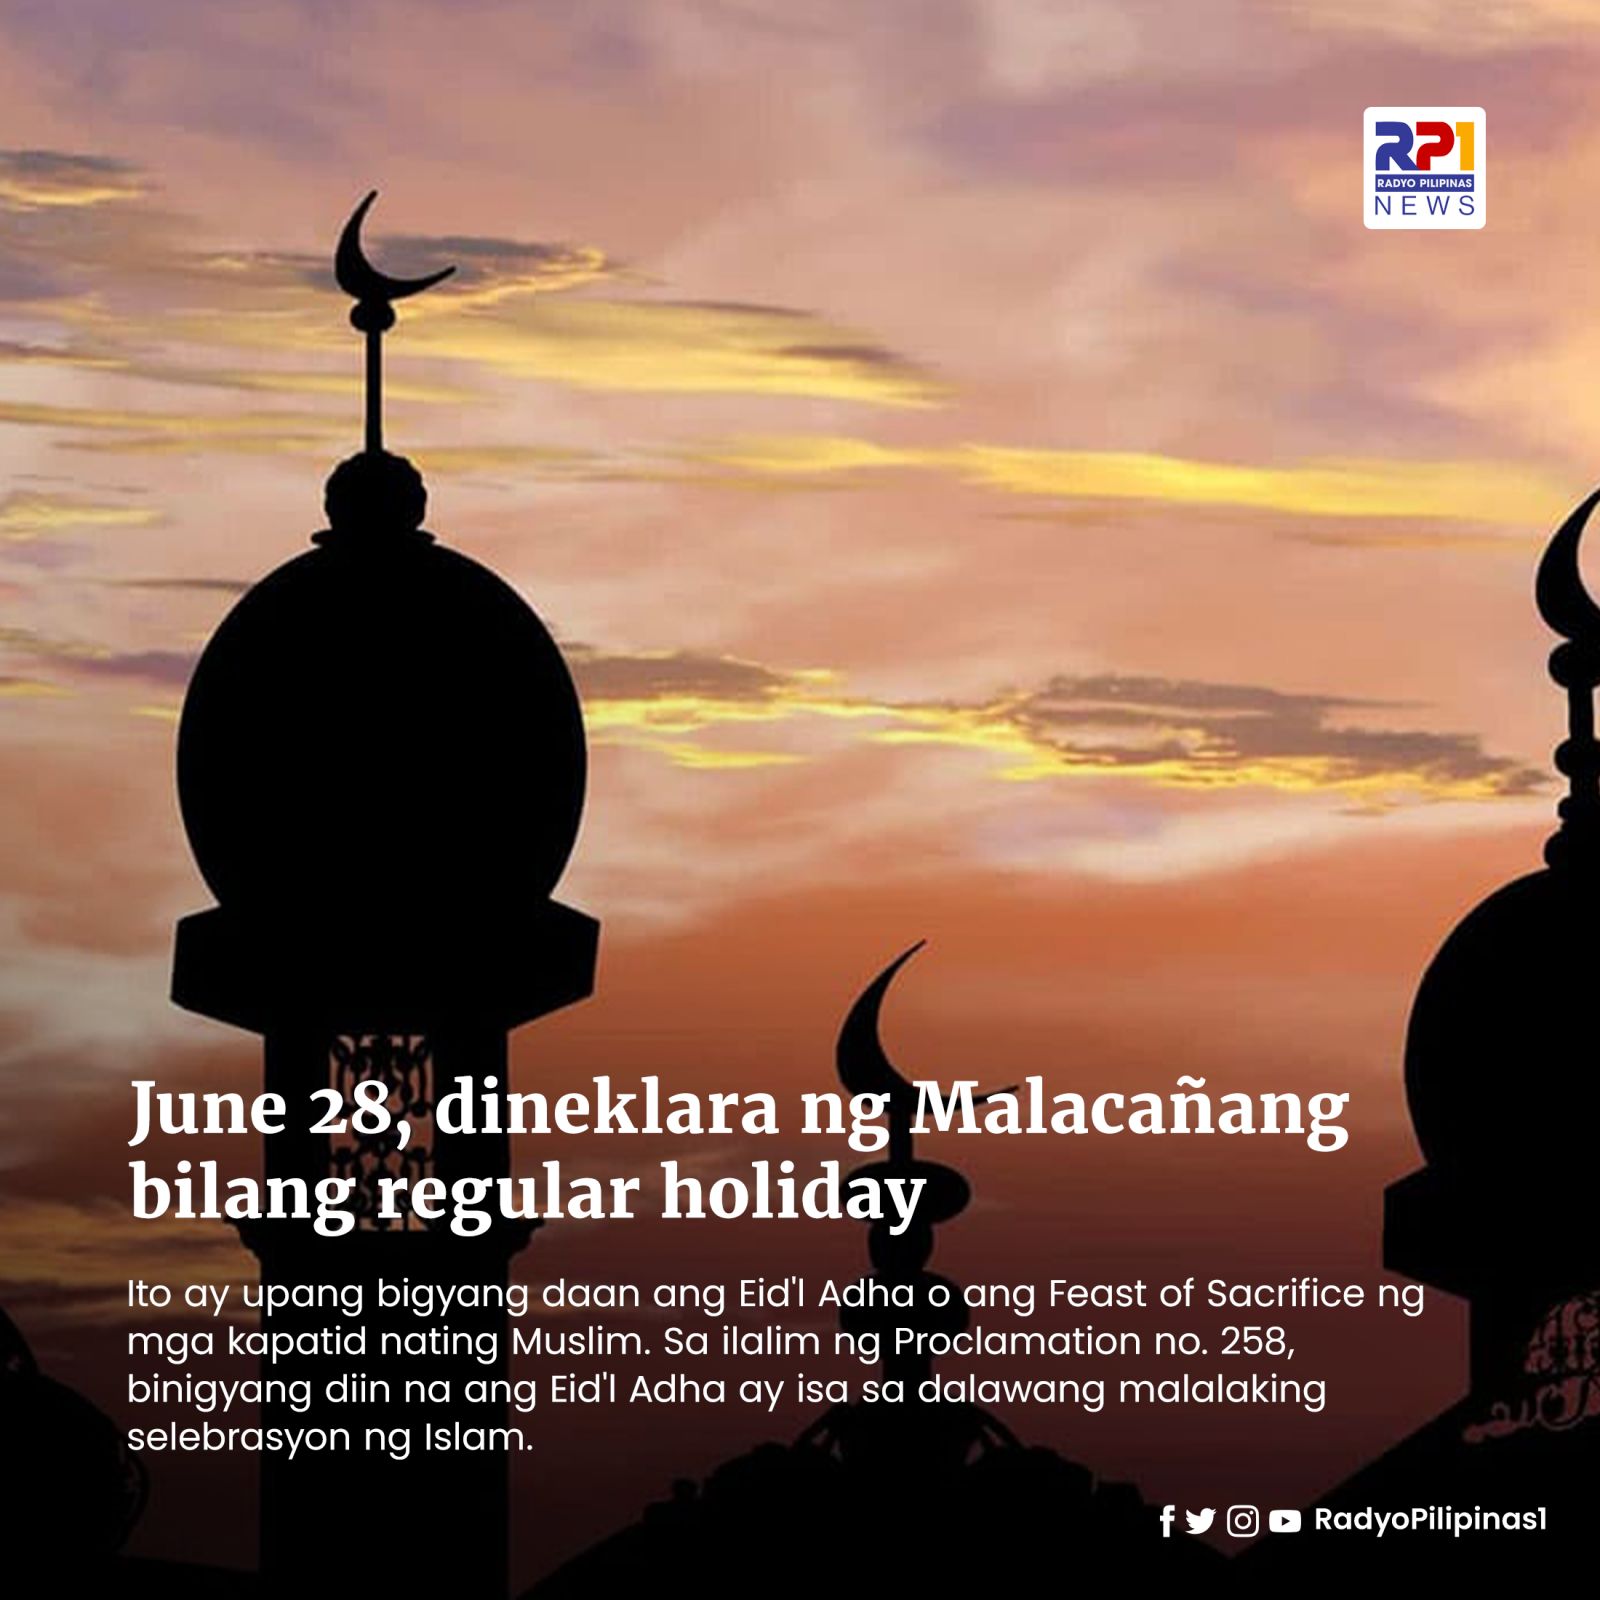 June 28, dineklara ng Malacañang bilang regular holiday upang bigyang